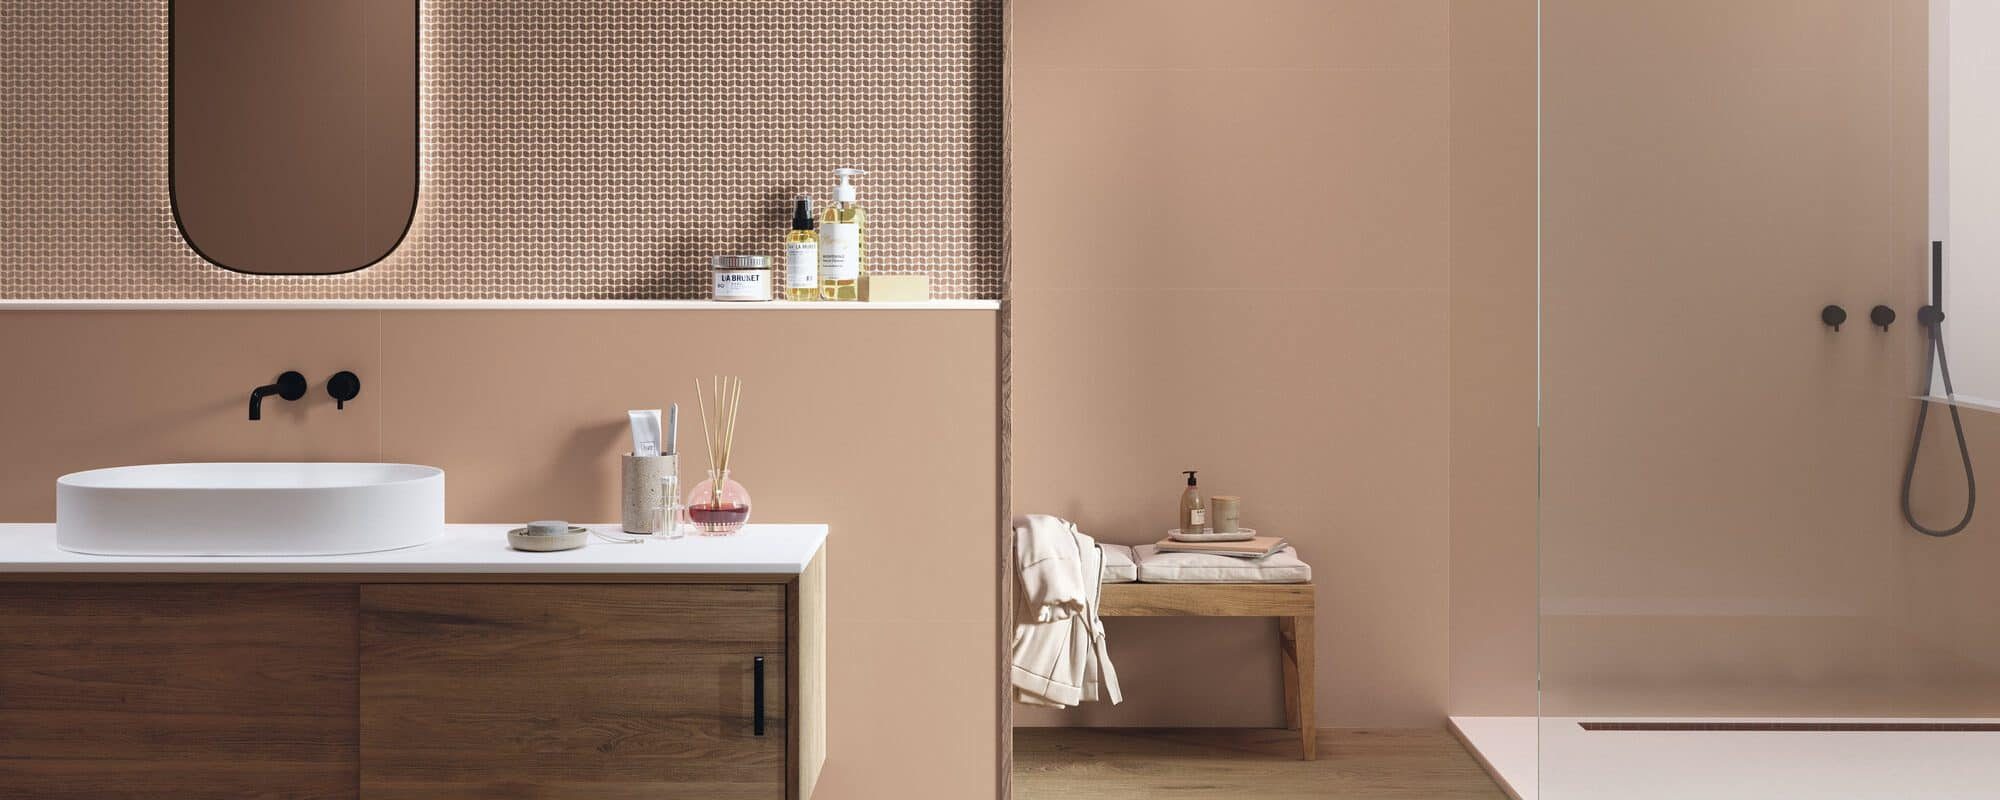 TRIANA wood effect porcelain bathroom tiles uk slider 1